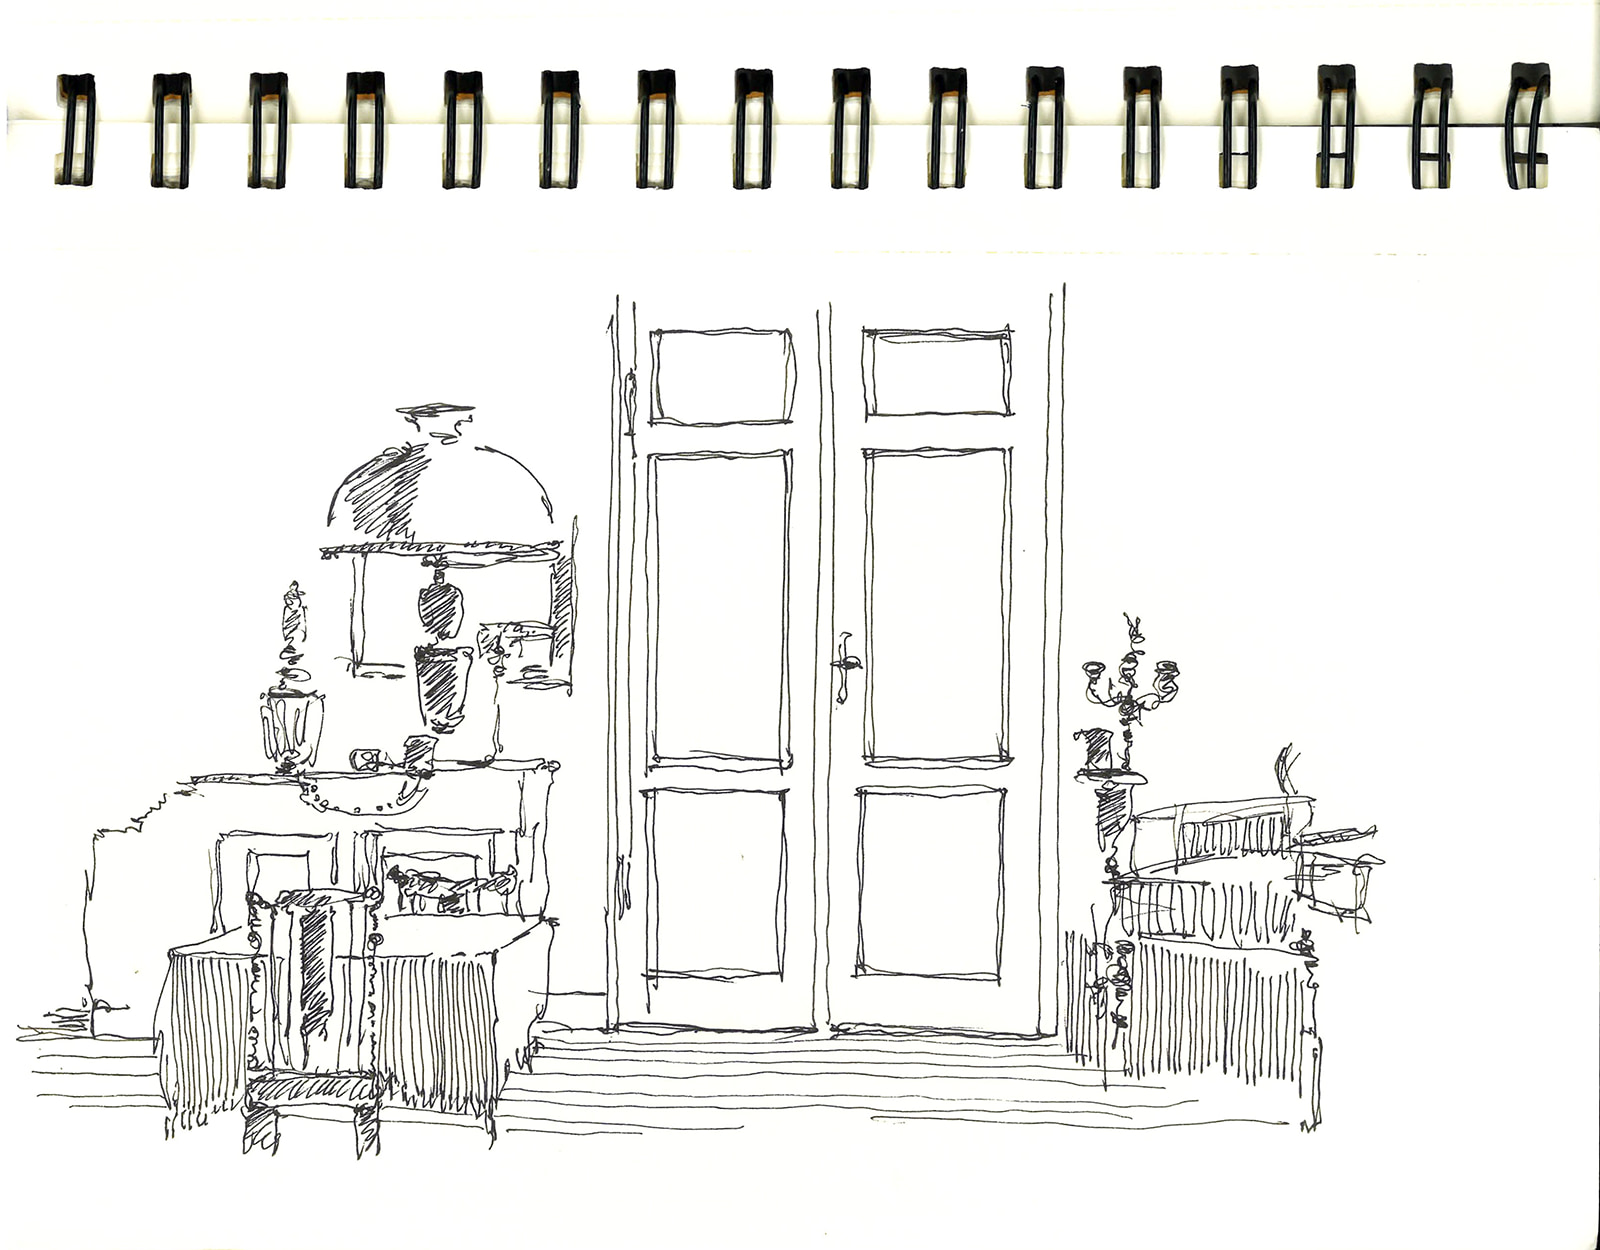 【絵】ヴィヴィアン佐藤さんによる線画。中央に扉、両脇にテーブルと椅子、ランプ、燭台などが描かれる。